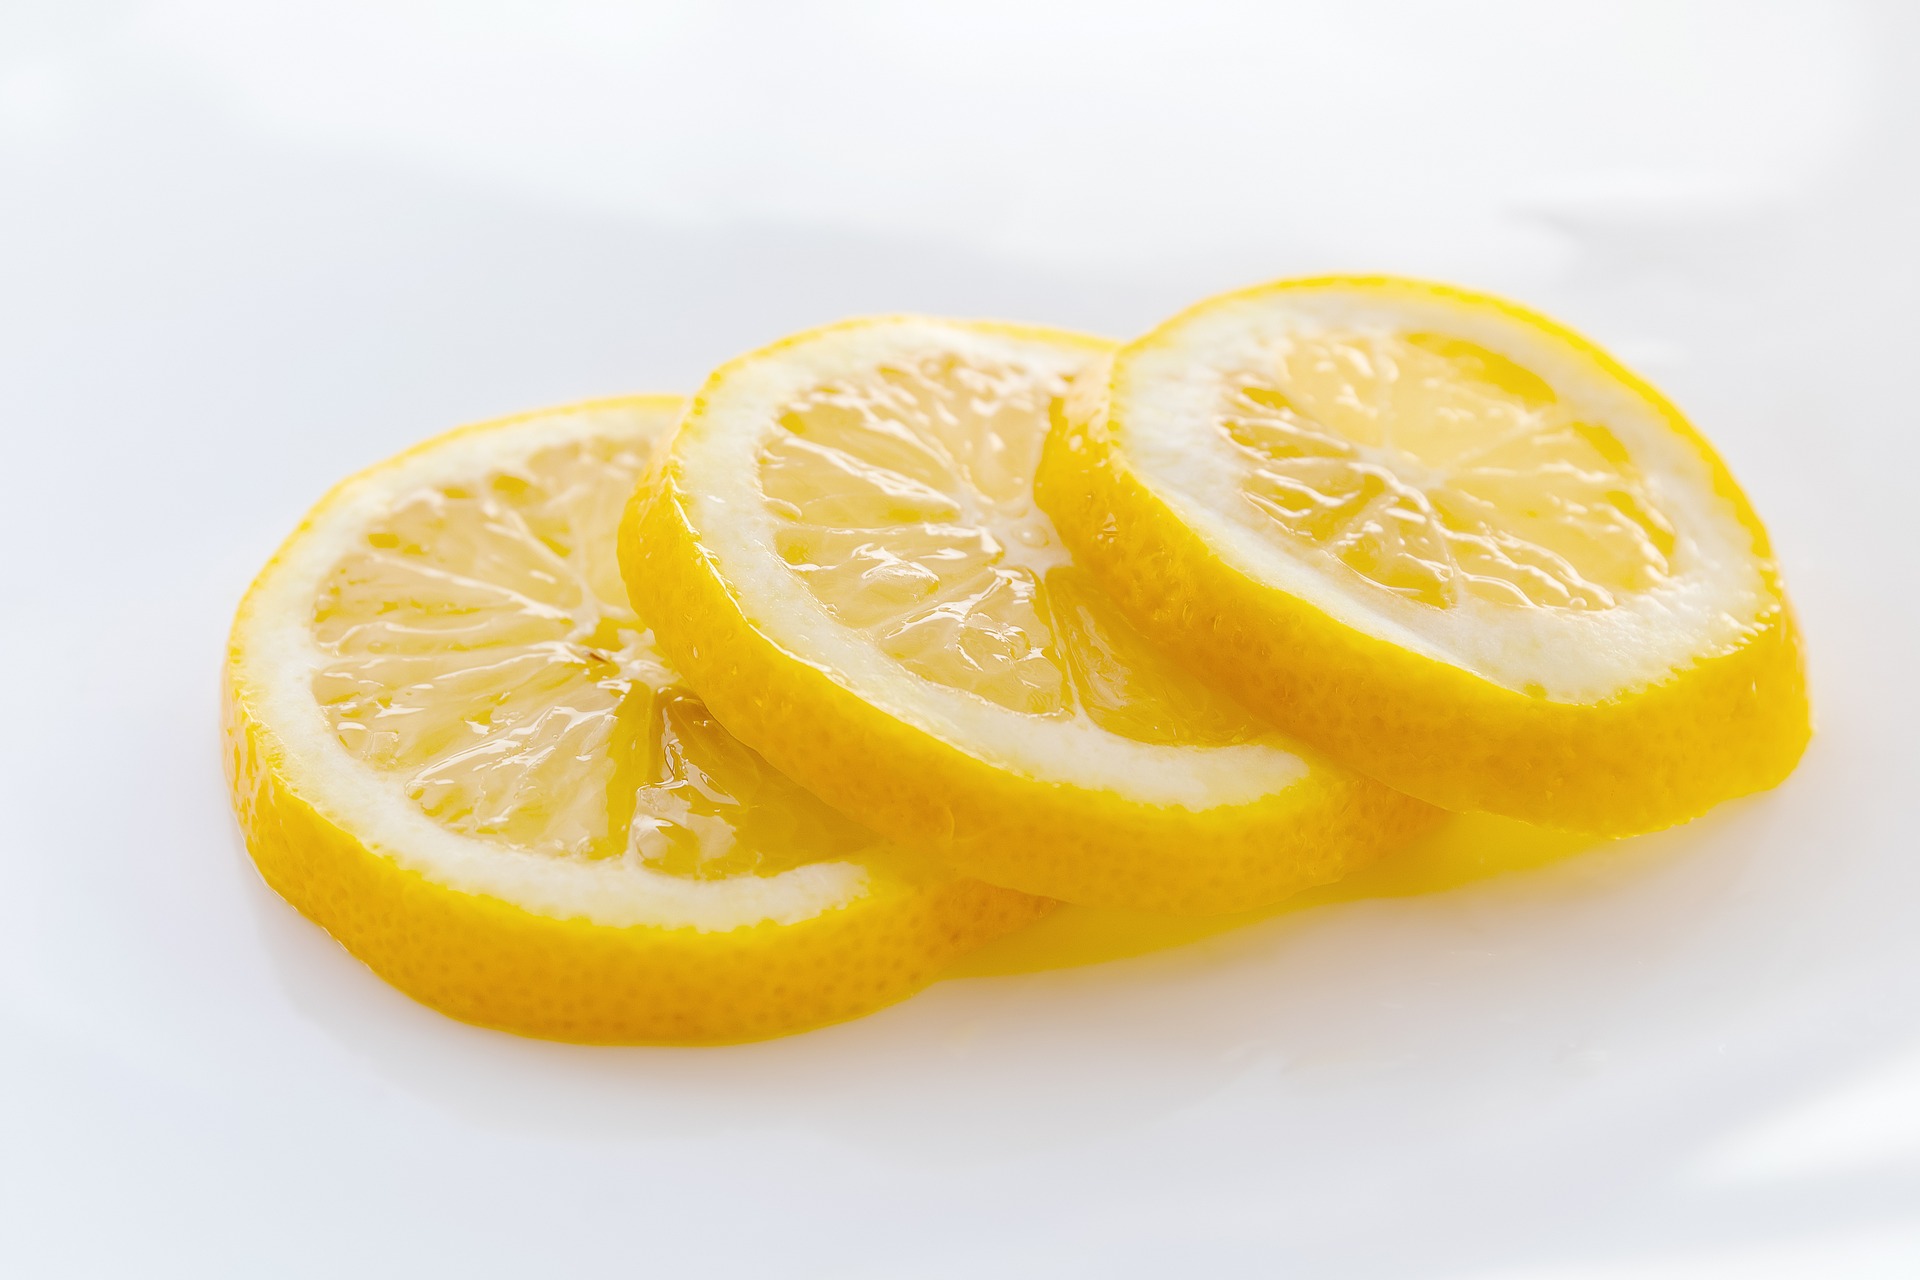 three slices of juicy lemon